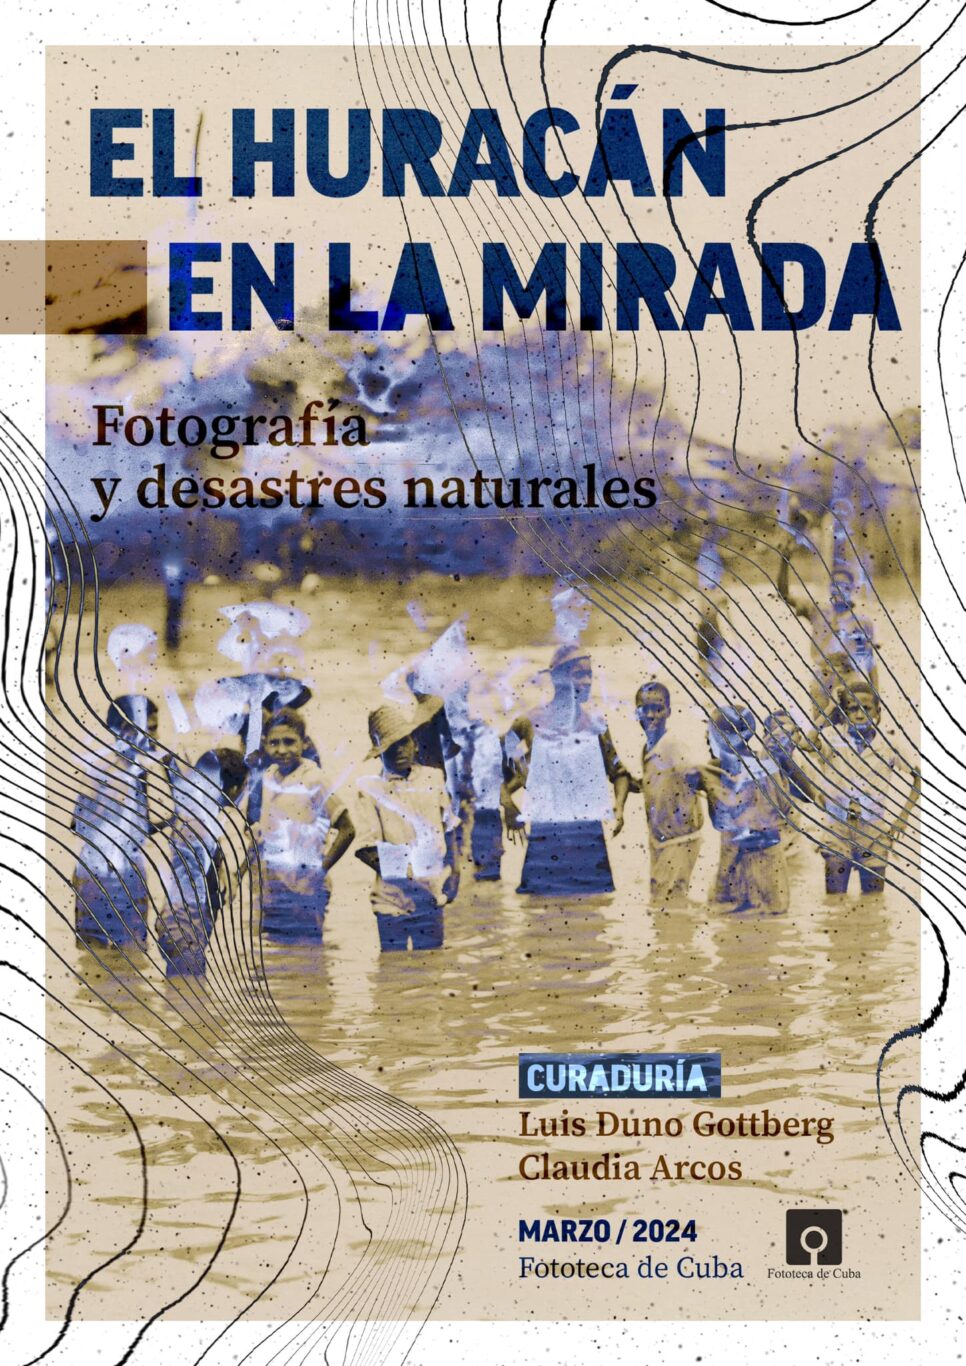 Cover of the catalog ‘El huracán en la mirada.’ Photo: Luis Duno-Gottberg on Facebook.